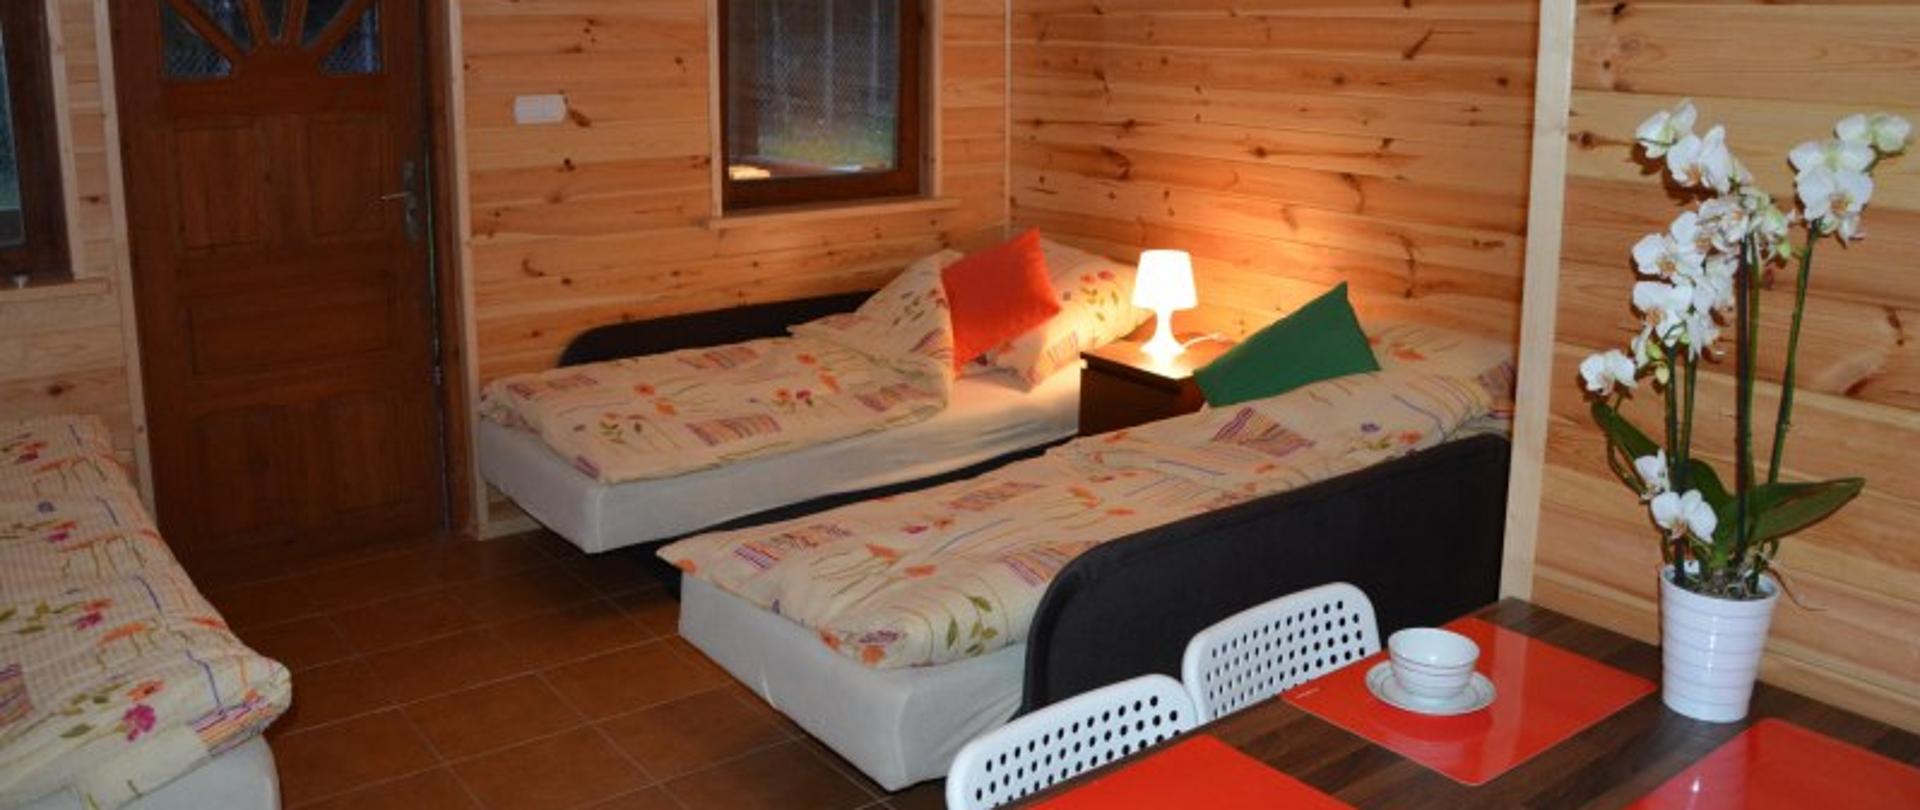 Zdjęcie wnętrza domku do wynajęcia. Ściany wyłożone drewnem, 3 pojedyncze łóżka, stół na którym stoi storczyk. Na podłodze płytki.